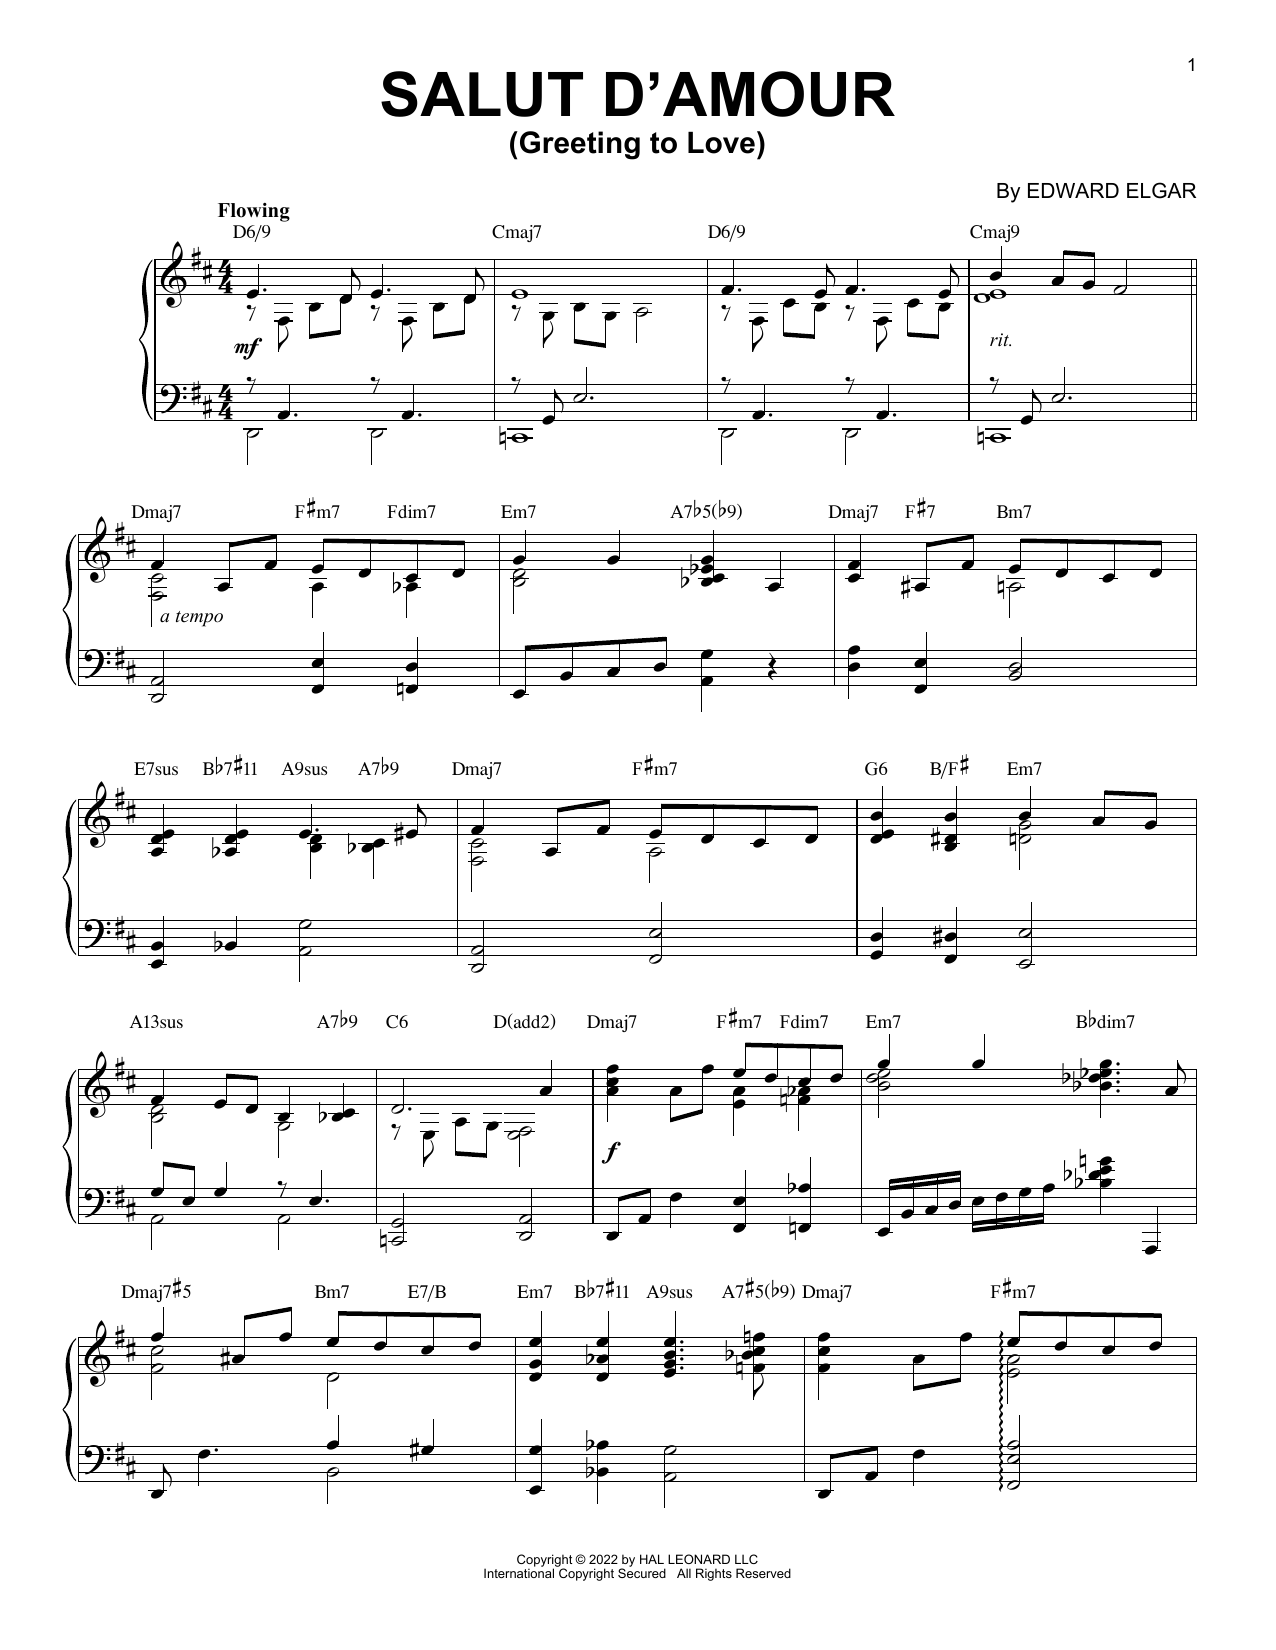 Download Edward Elgar Salut D'amour (Greeting To Love) [Jazz Sheet Music